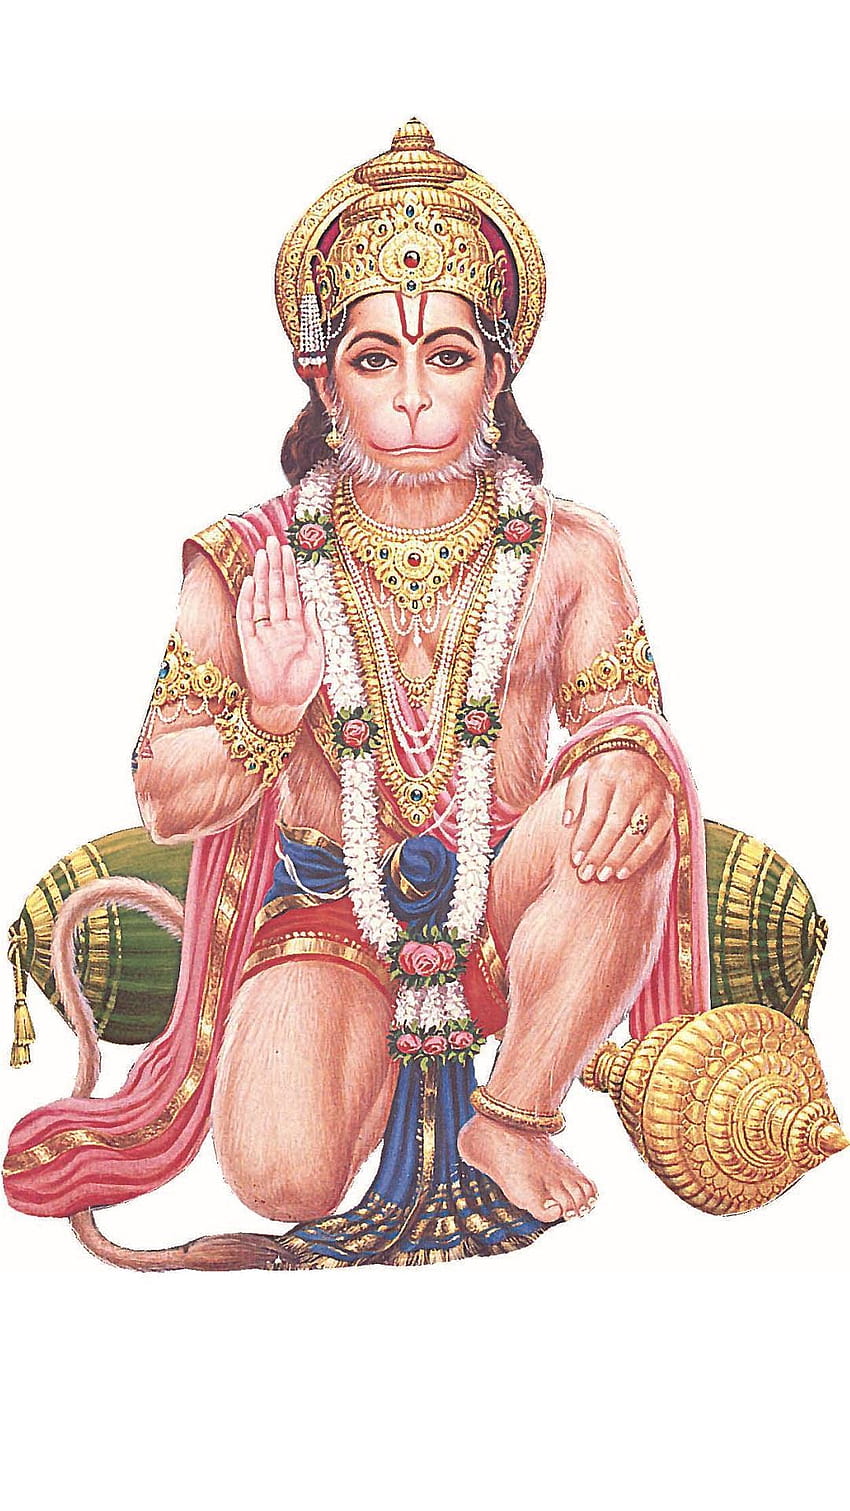 Jai Hanuman para Android, jai hanuman mobile HD phone wallpaper | Pxfuel